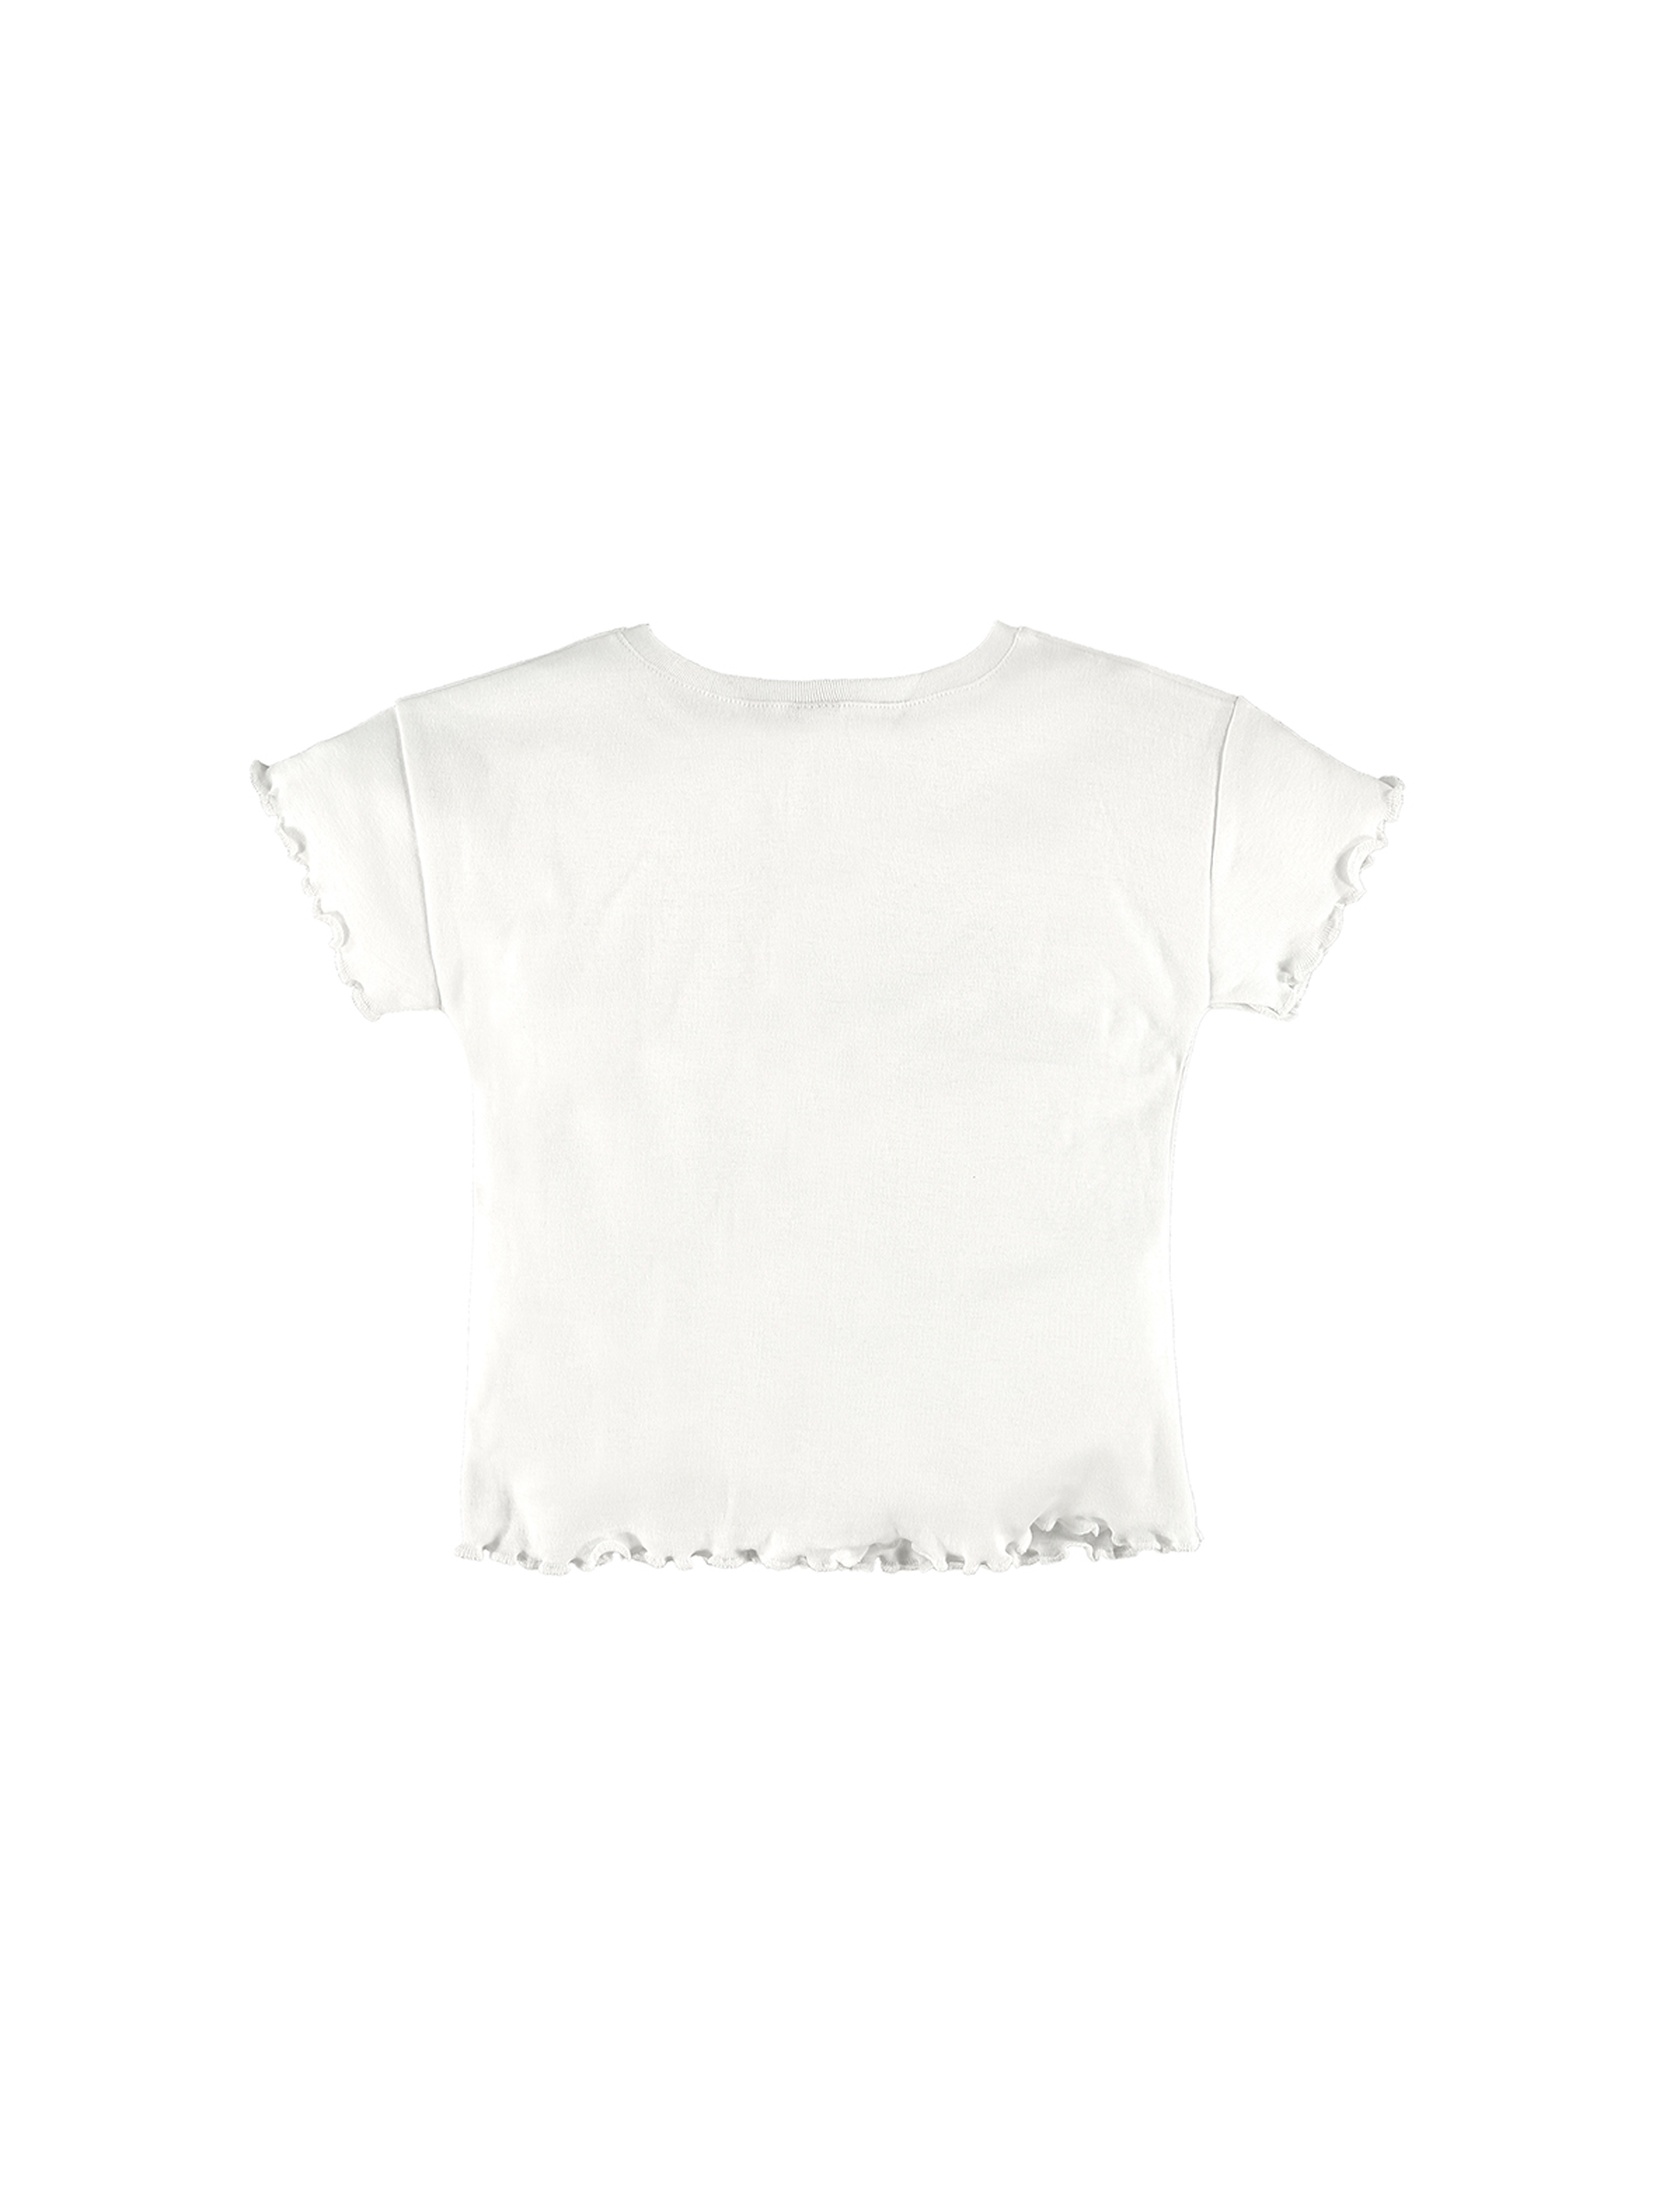 Biały bawełniany t-shirt dziewczęcy z nadrukiem